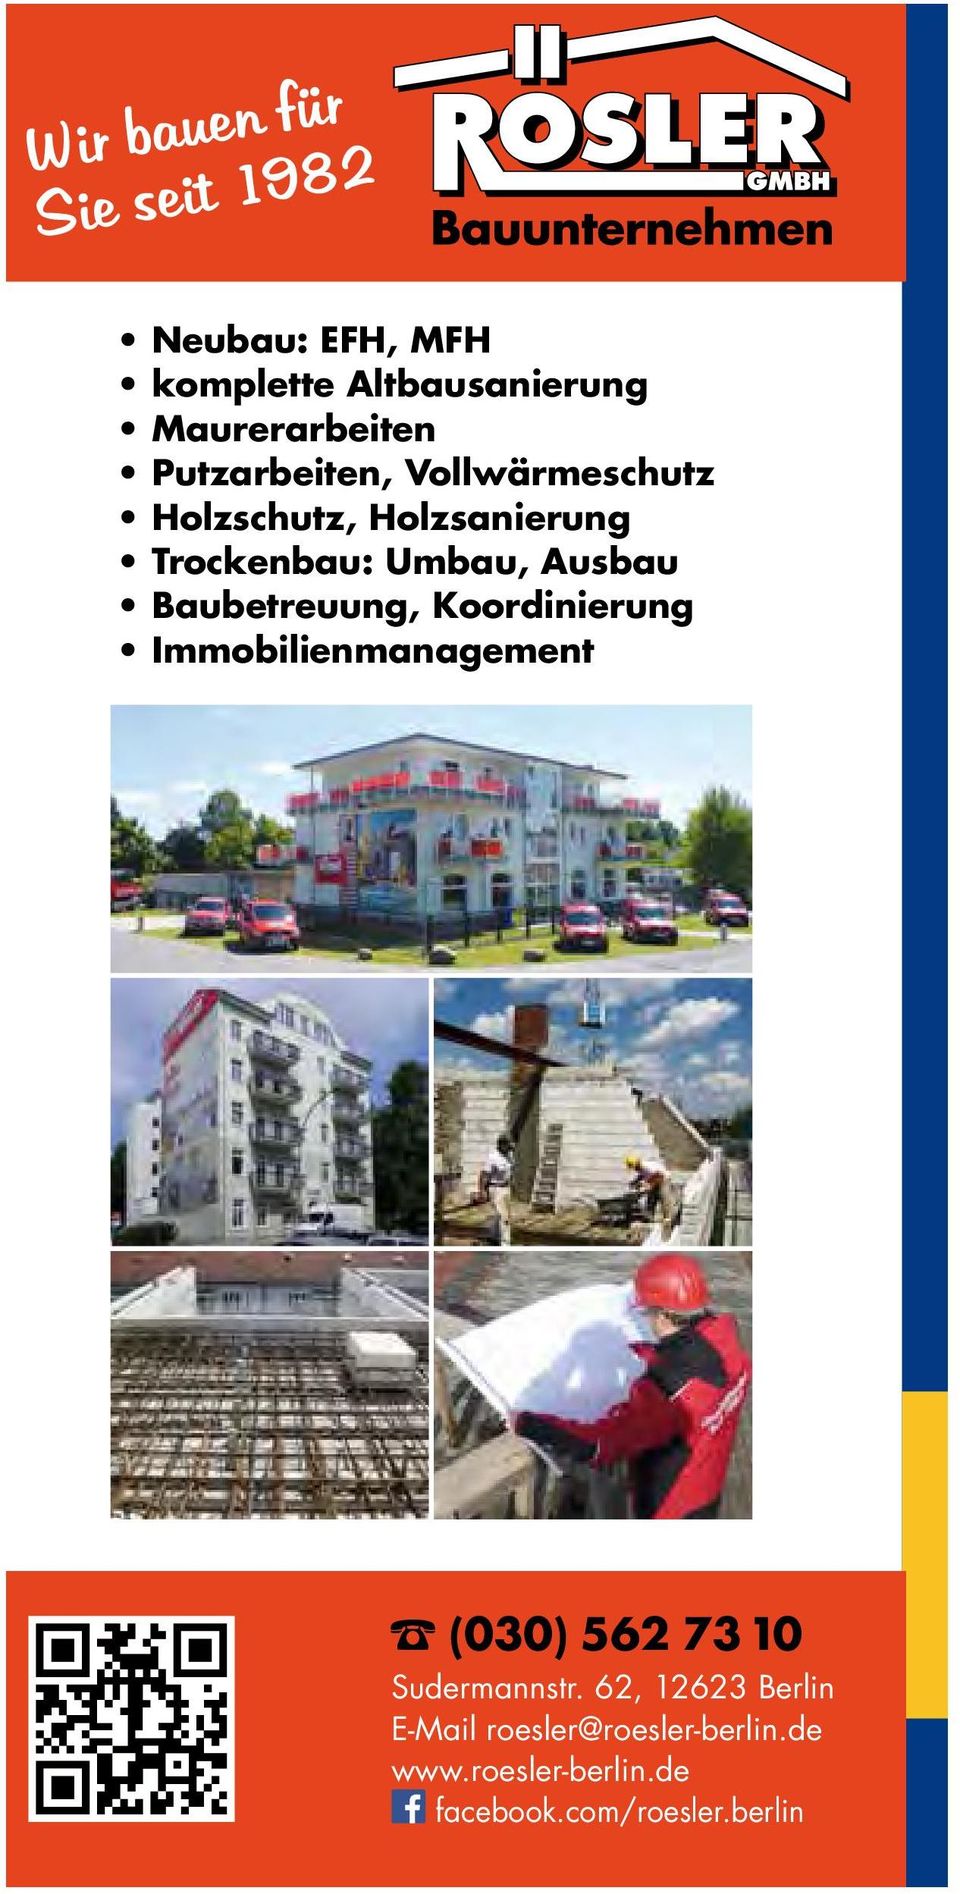 Baubetreuung, Koordinierung Immobilienmanagement 20 (030) 562 73 10 Sudermannstr.